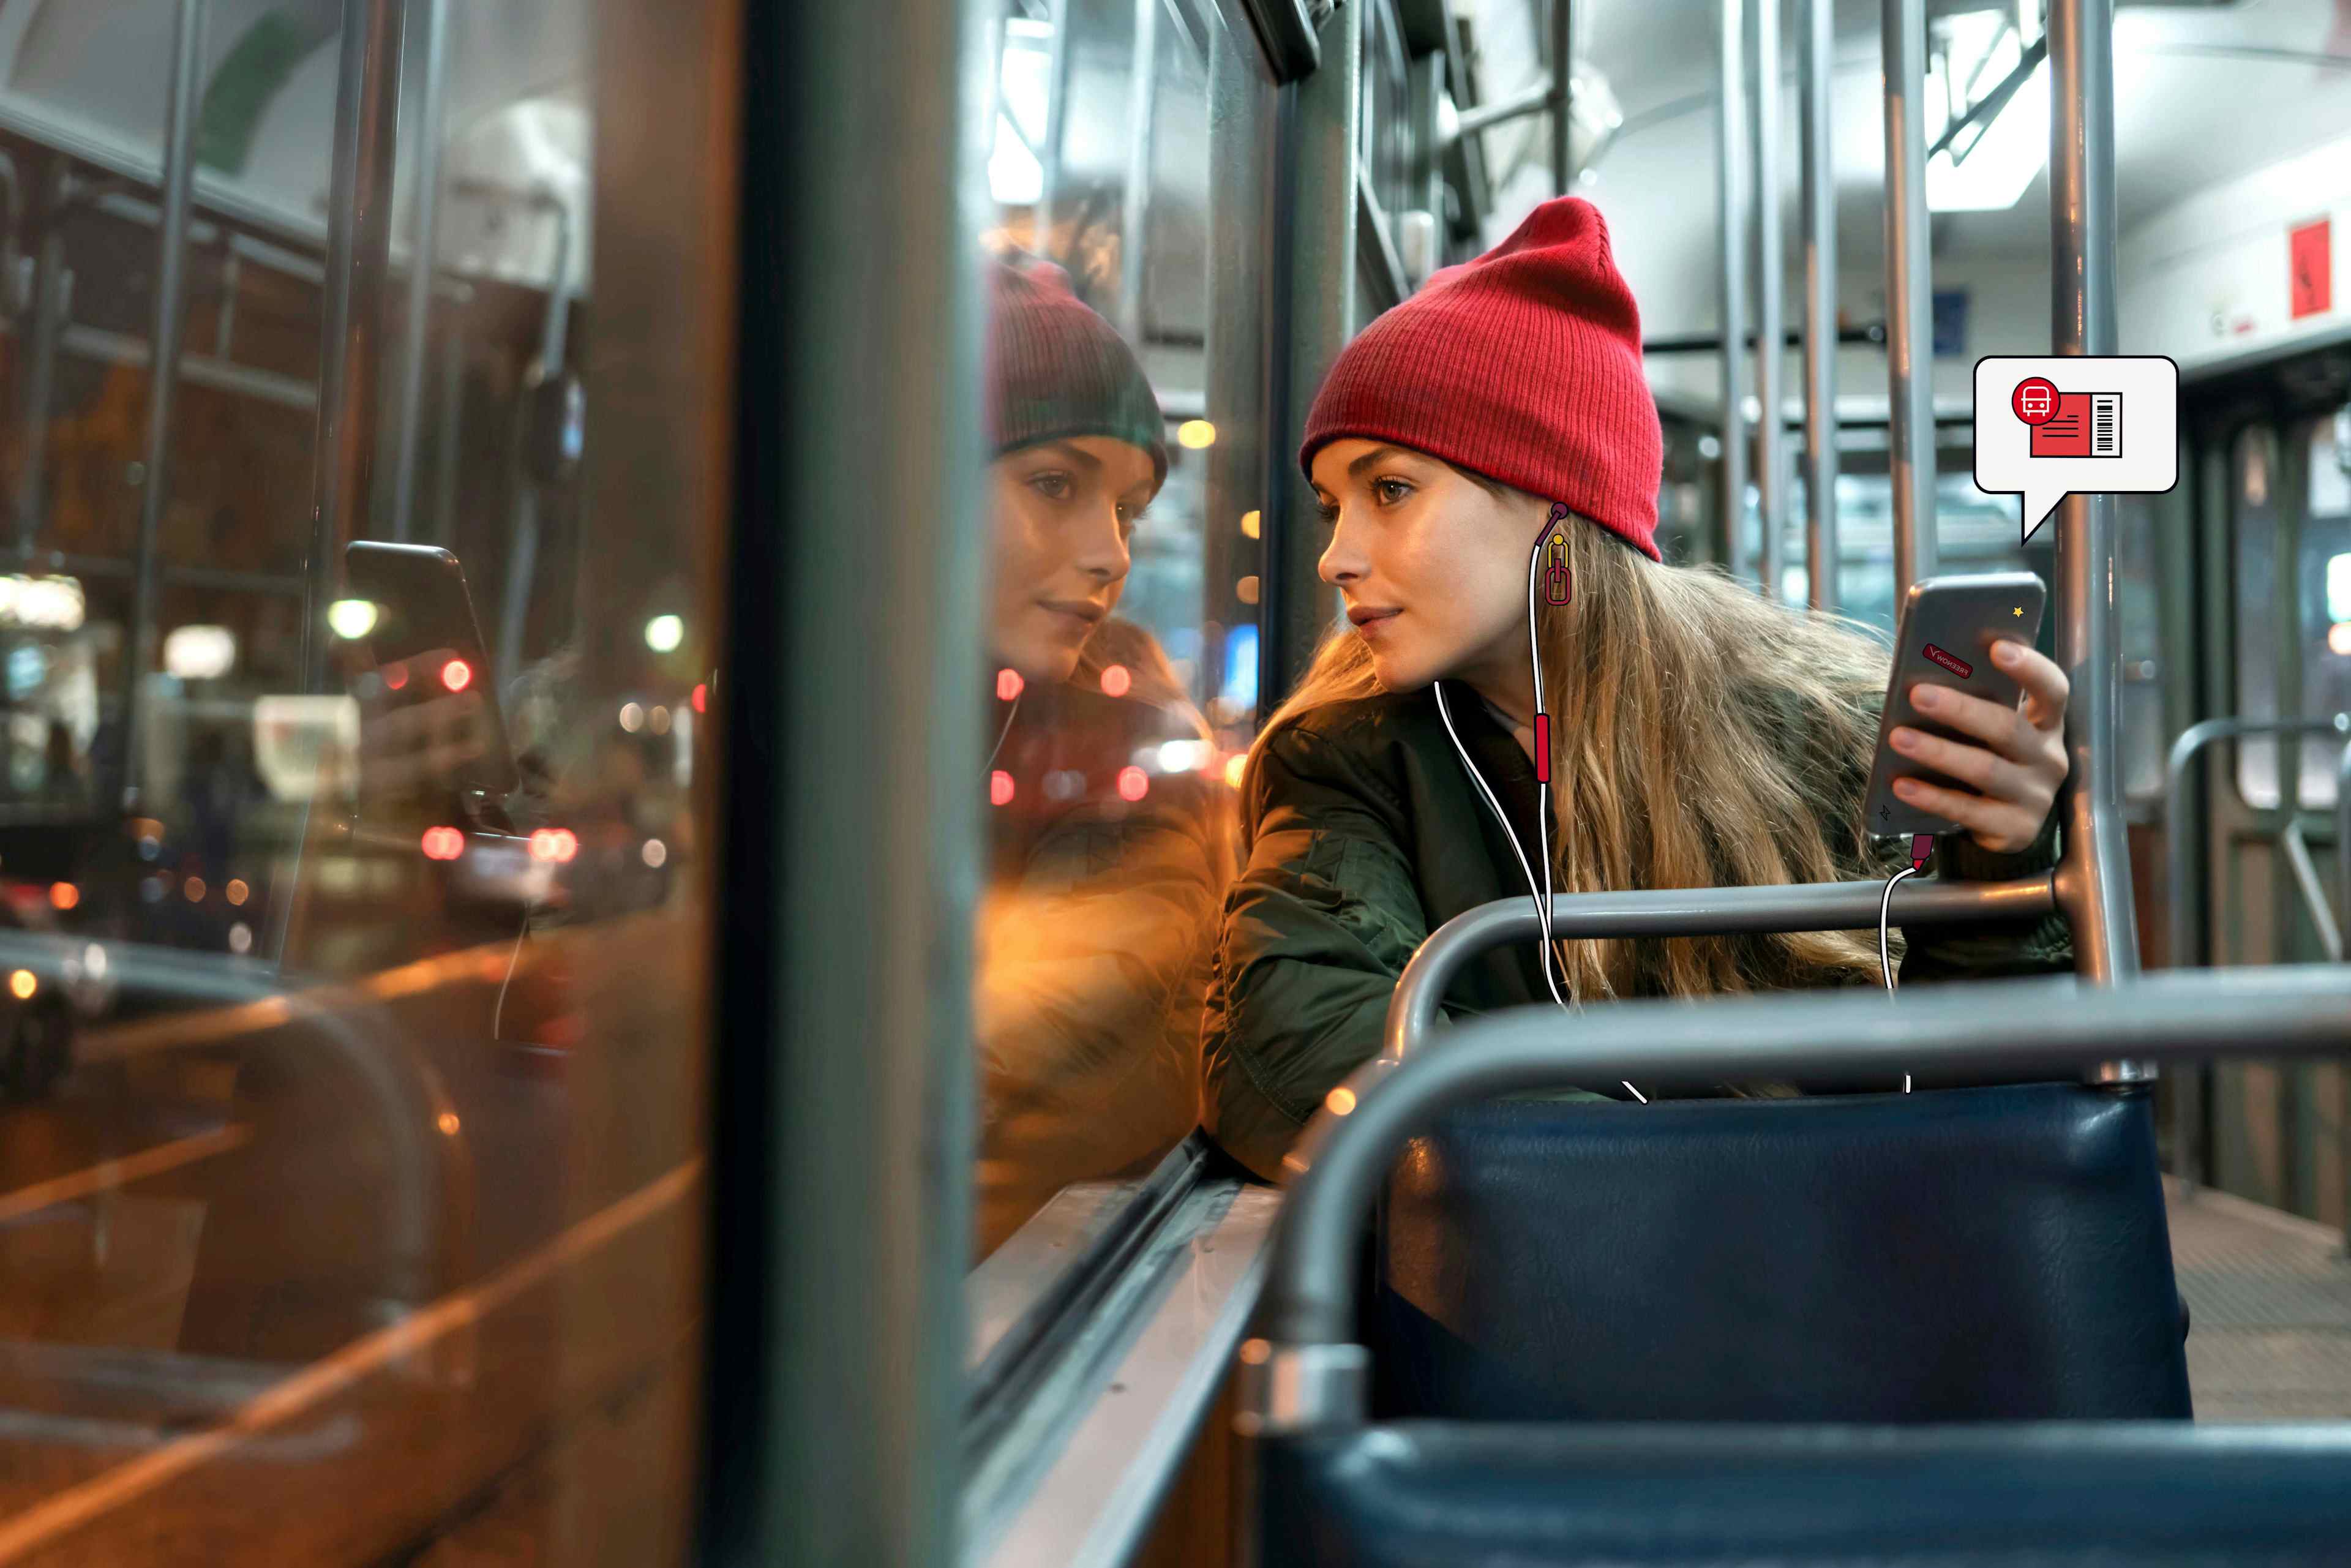 Empleada montada en el autobús sosteniendo su teléfono con el icono de un billete de transporte público asomando el teléfono